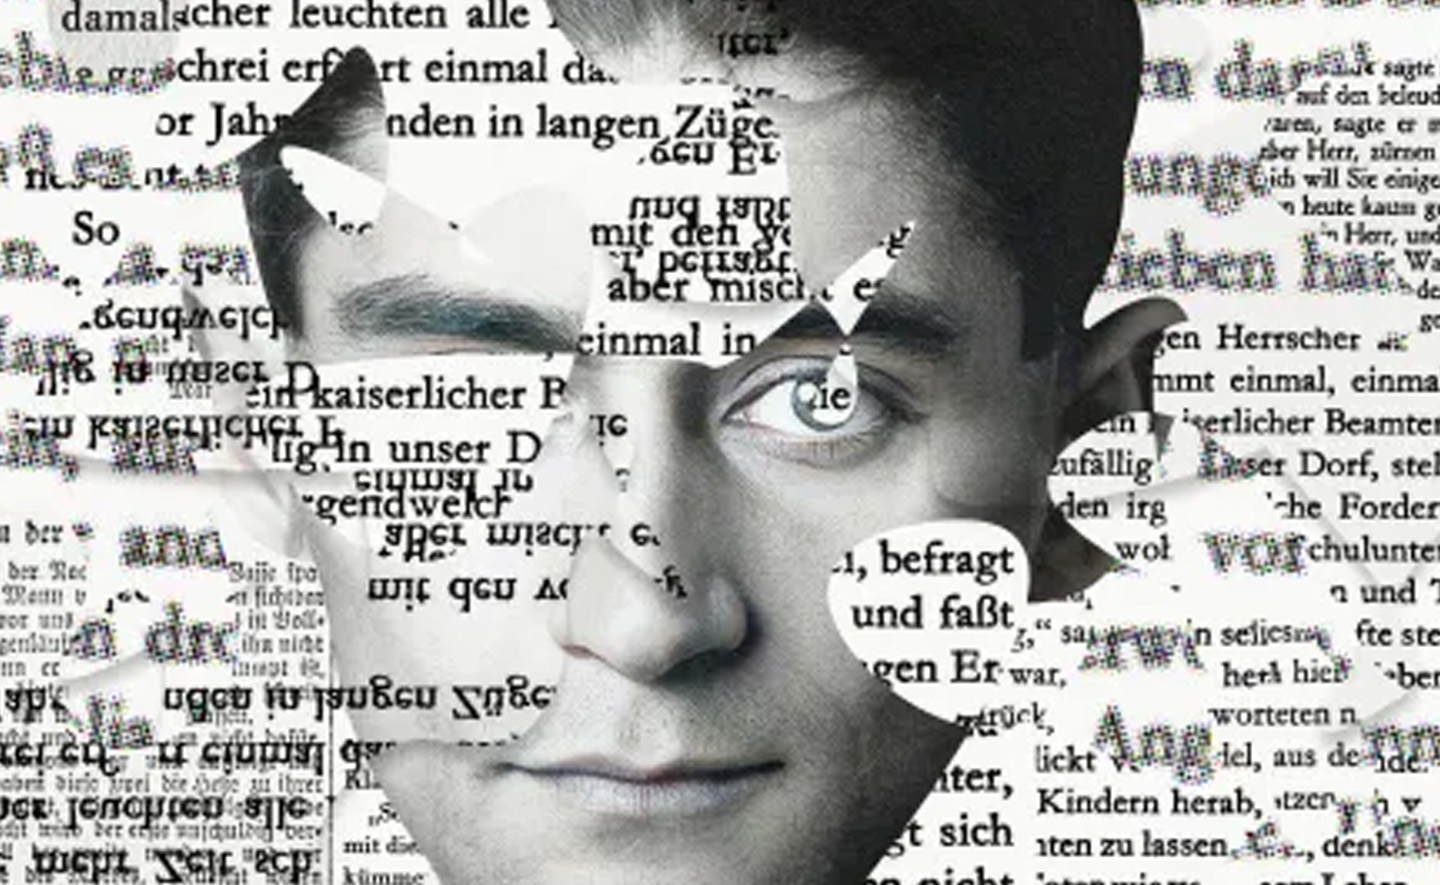 Việc dịch các tác phẩm của Kafka từ tiếng Đức gần như là không thể